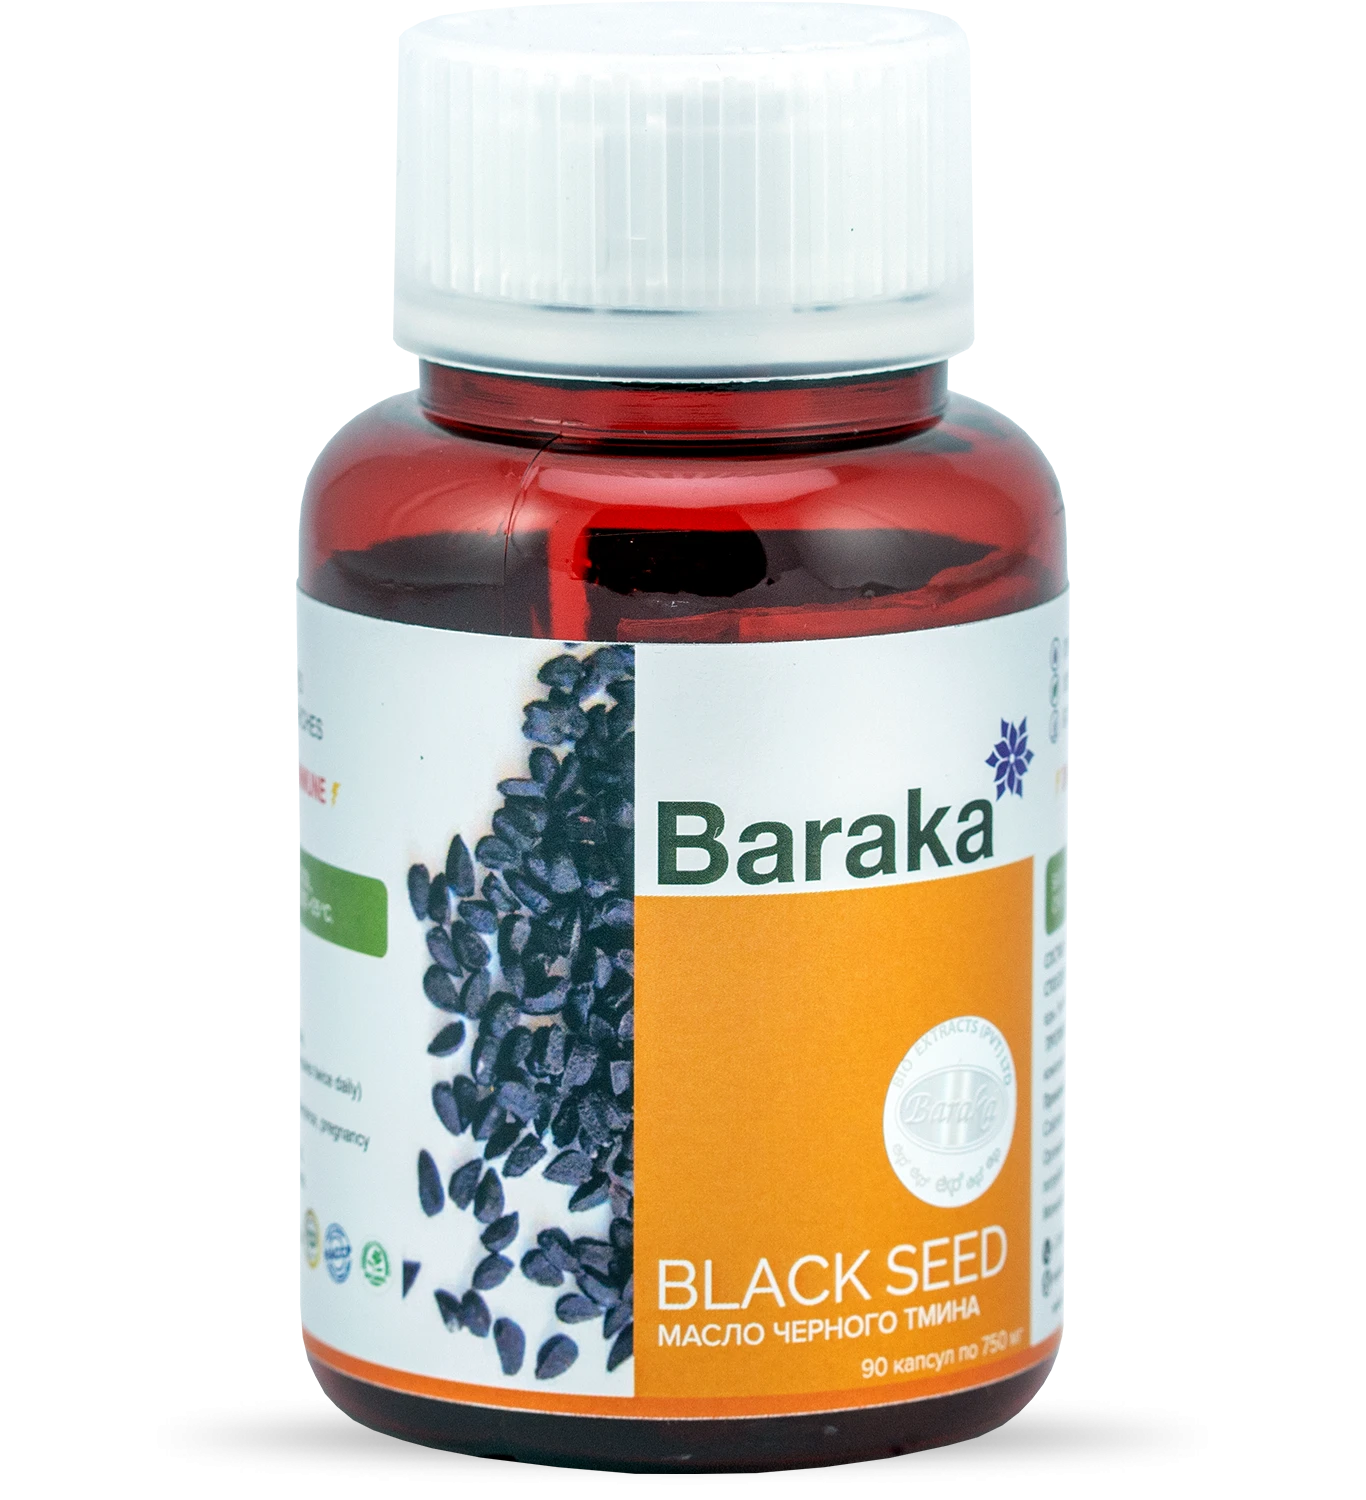 Диабсол (масло чёрного тмина в капсулах) Барака Black Seed Baraka 90 капс.